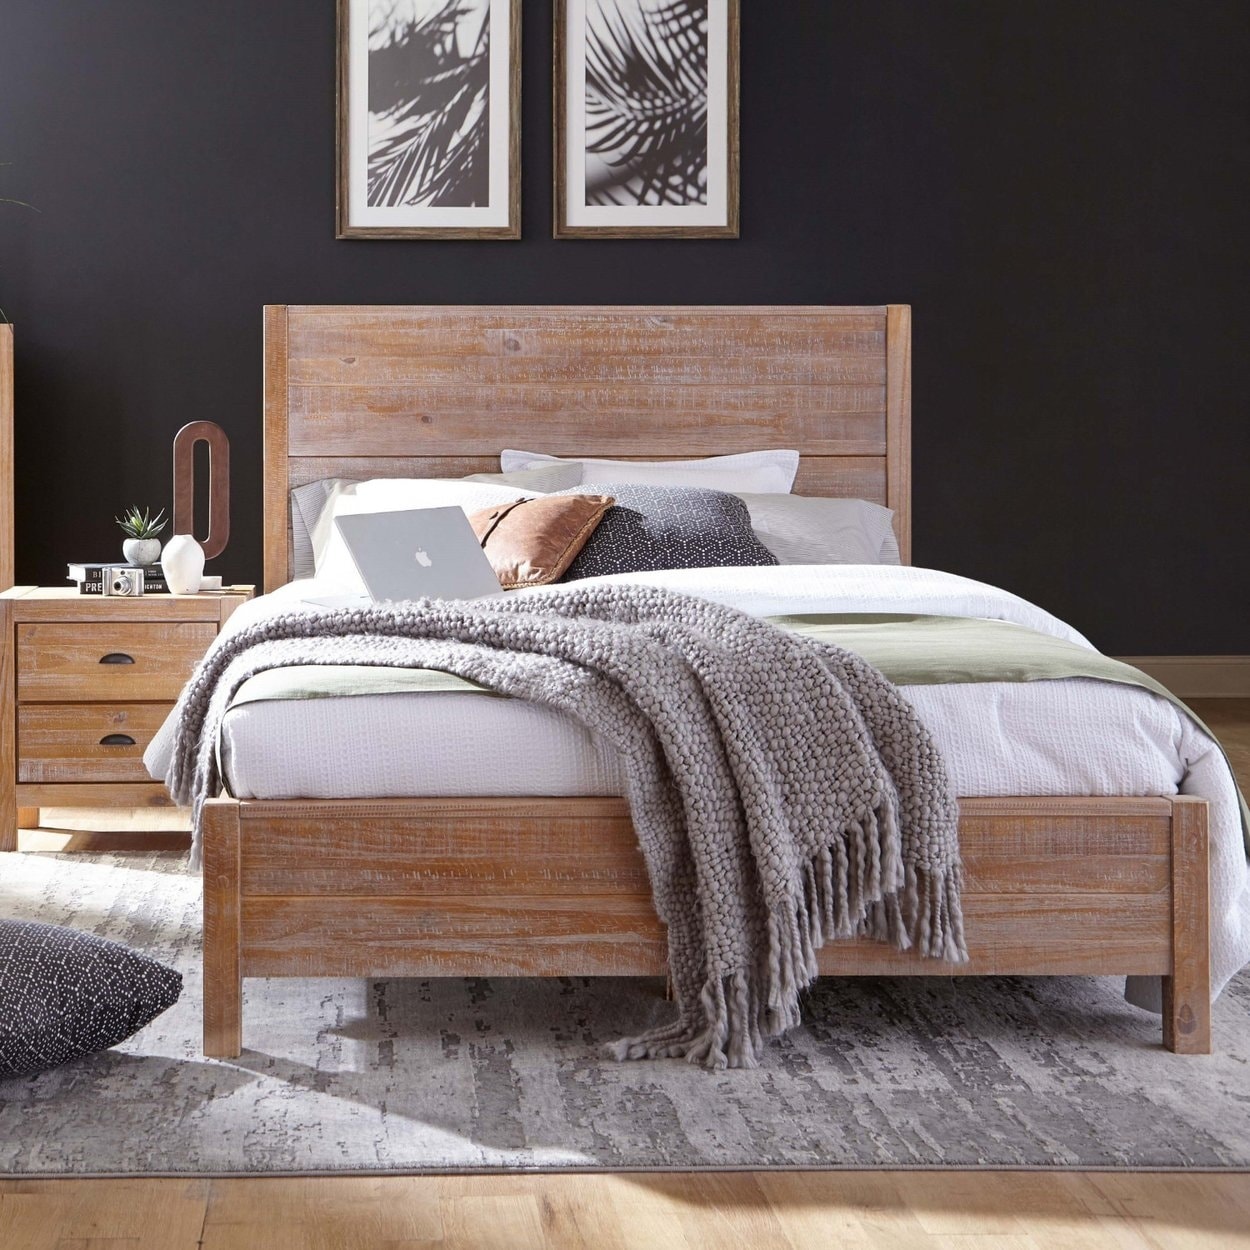 erwt uitdrukken Martin Luther King Junior Grain Wood Furniture Montauk Distressed Solid Wood Panel Bed - On Sale -  Overstock - 20603174